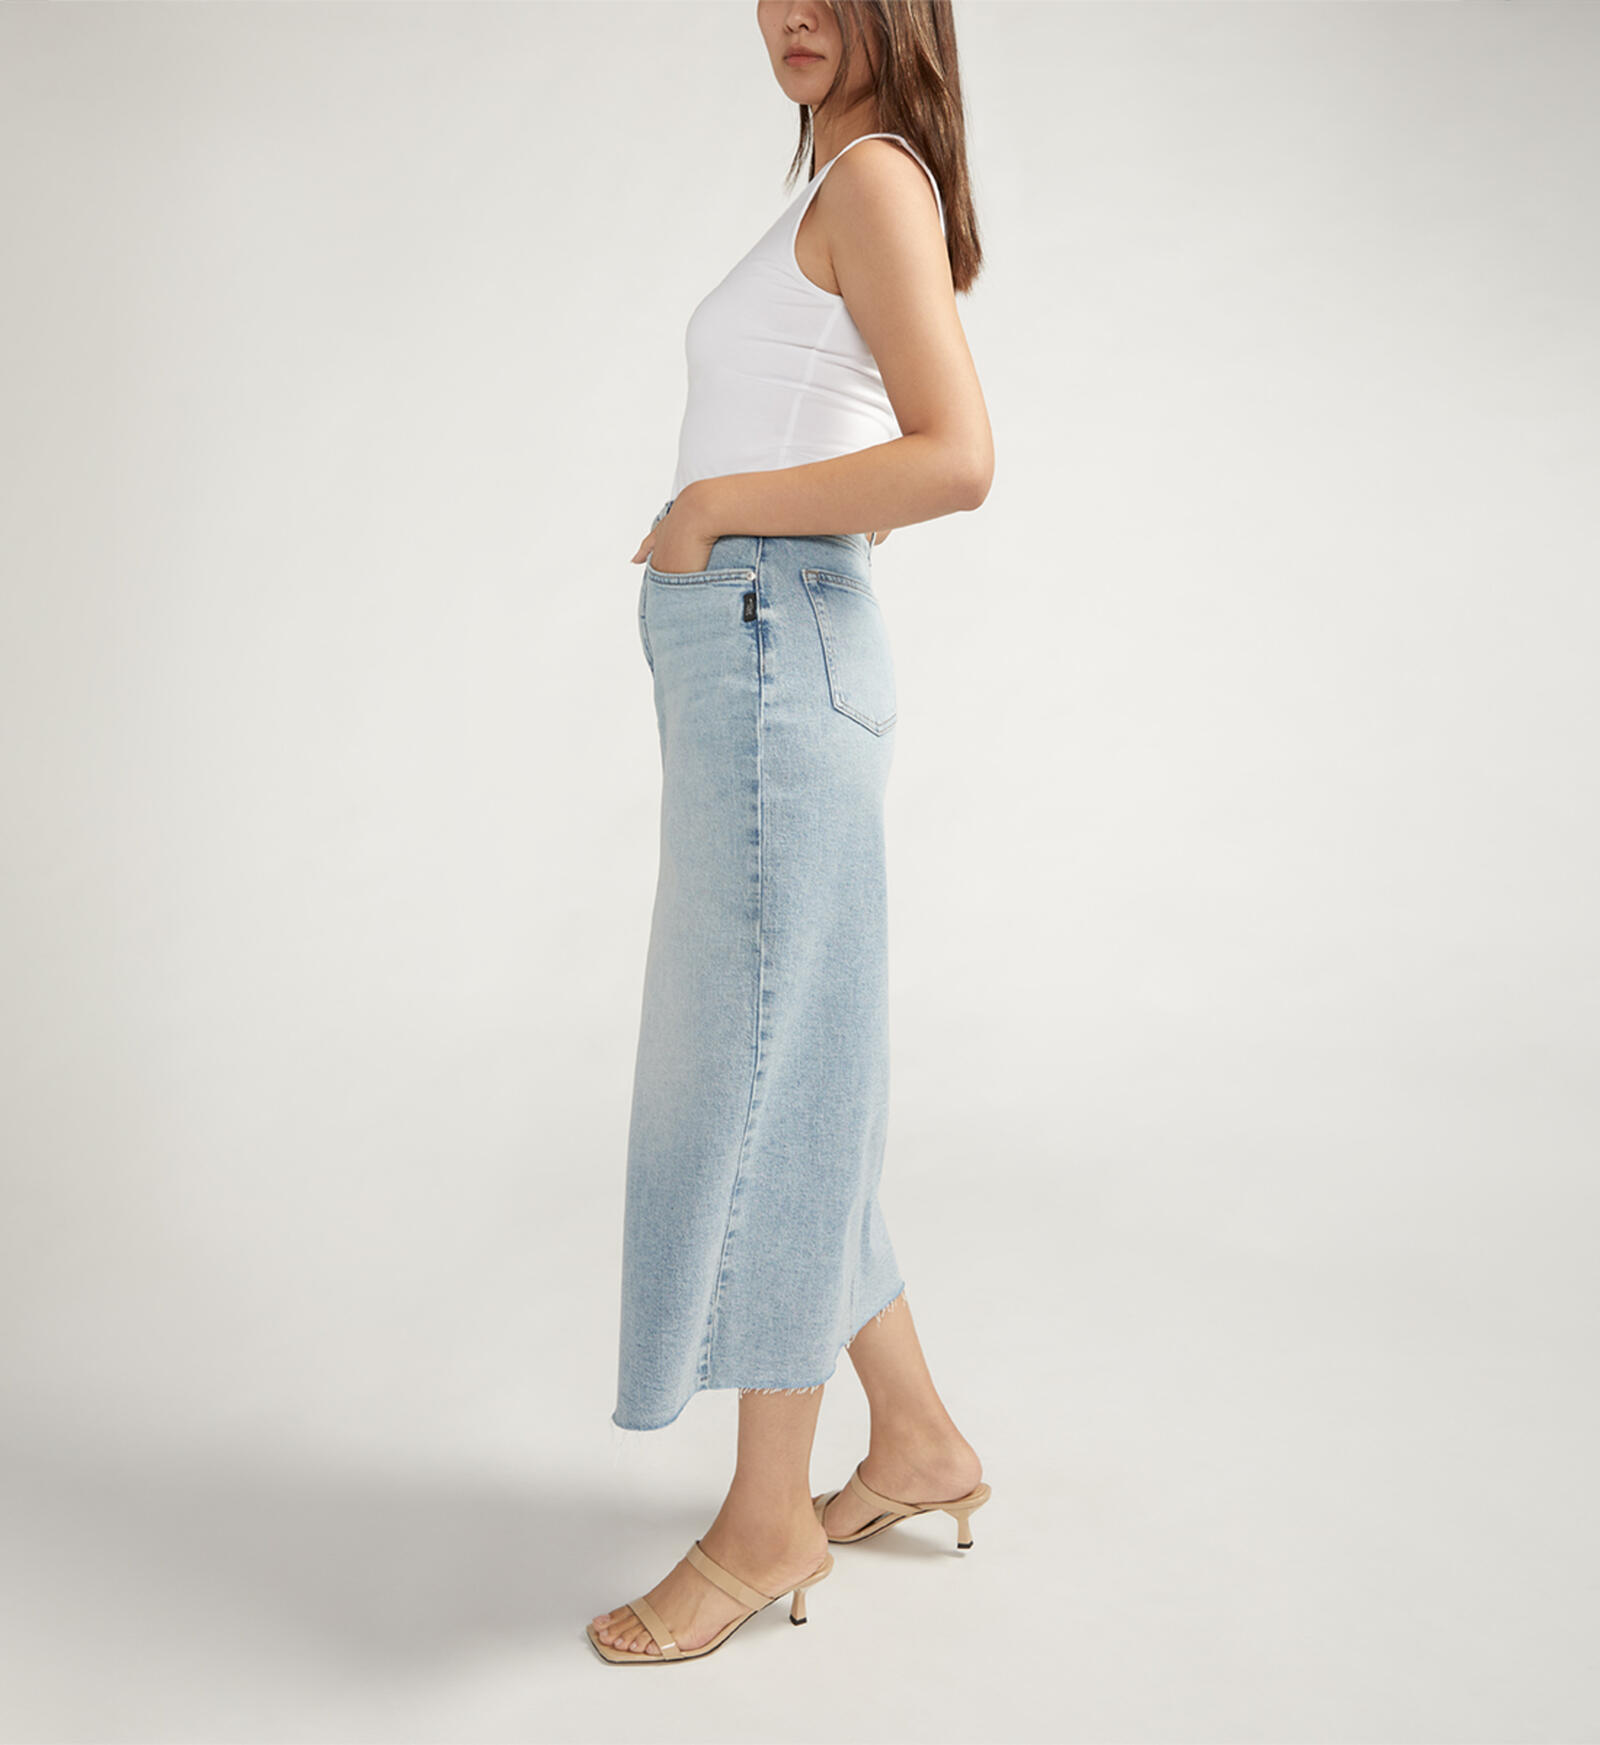 Buy Front-Slit Midi Jean Skirt for USD 68.00